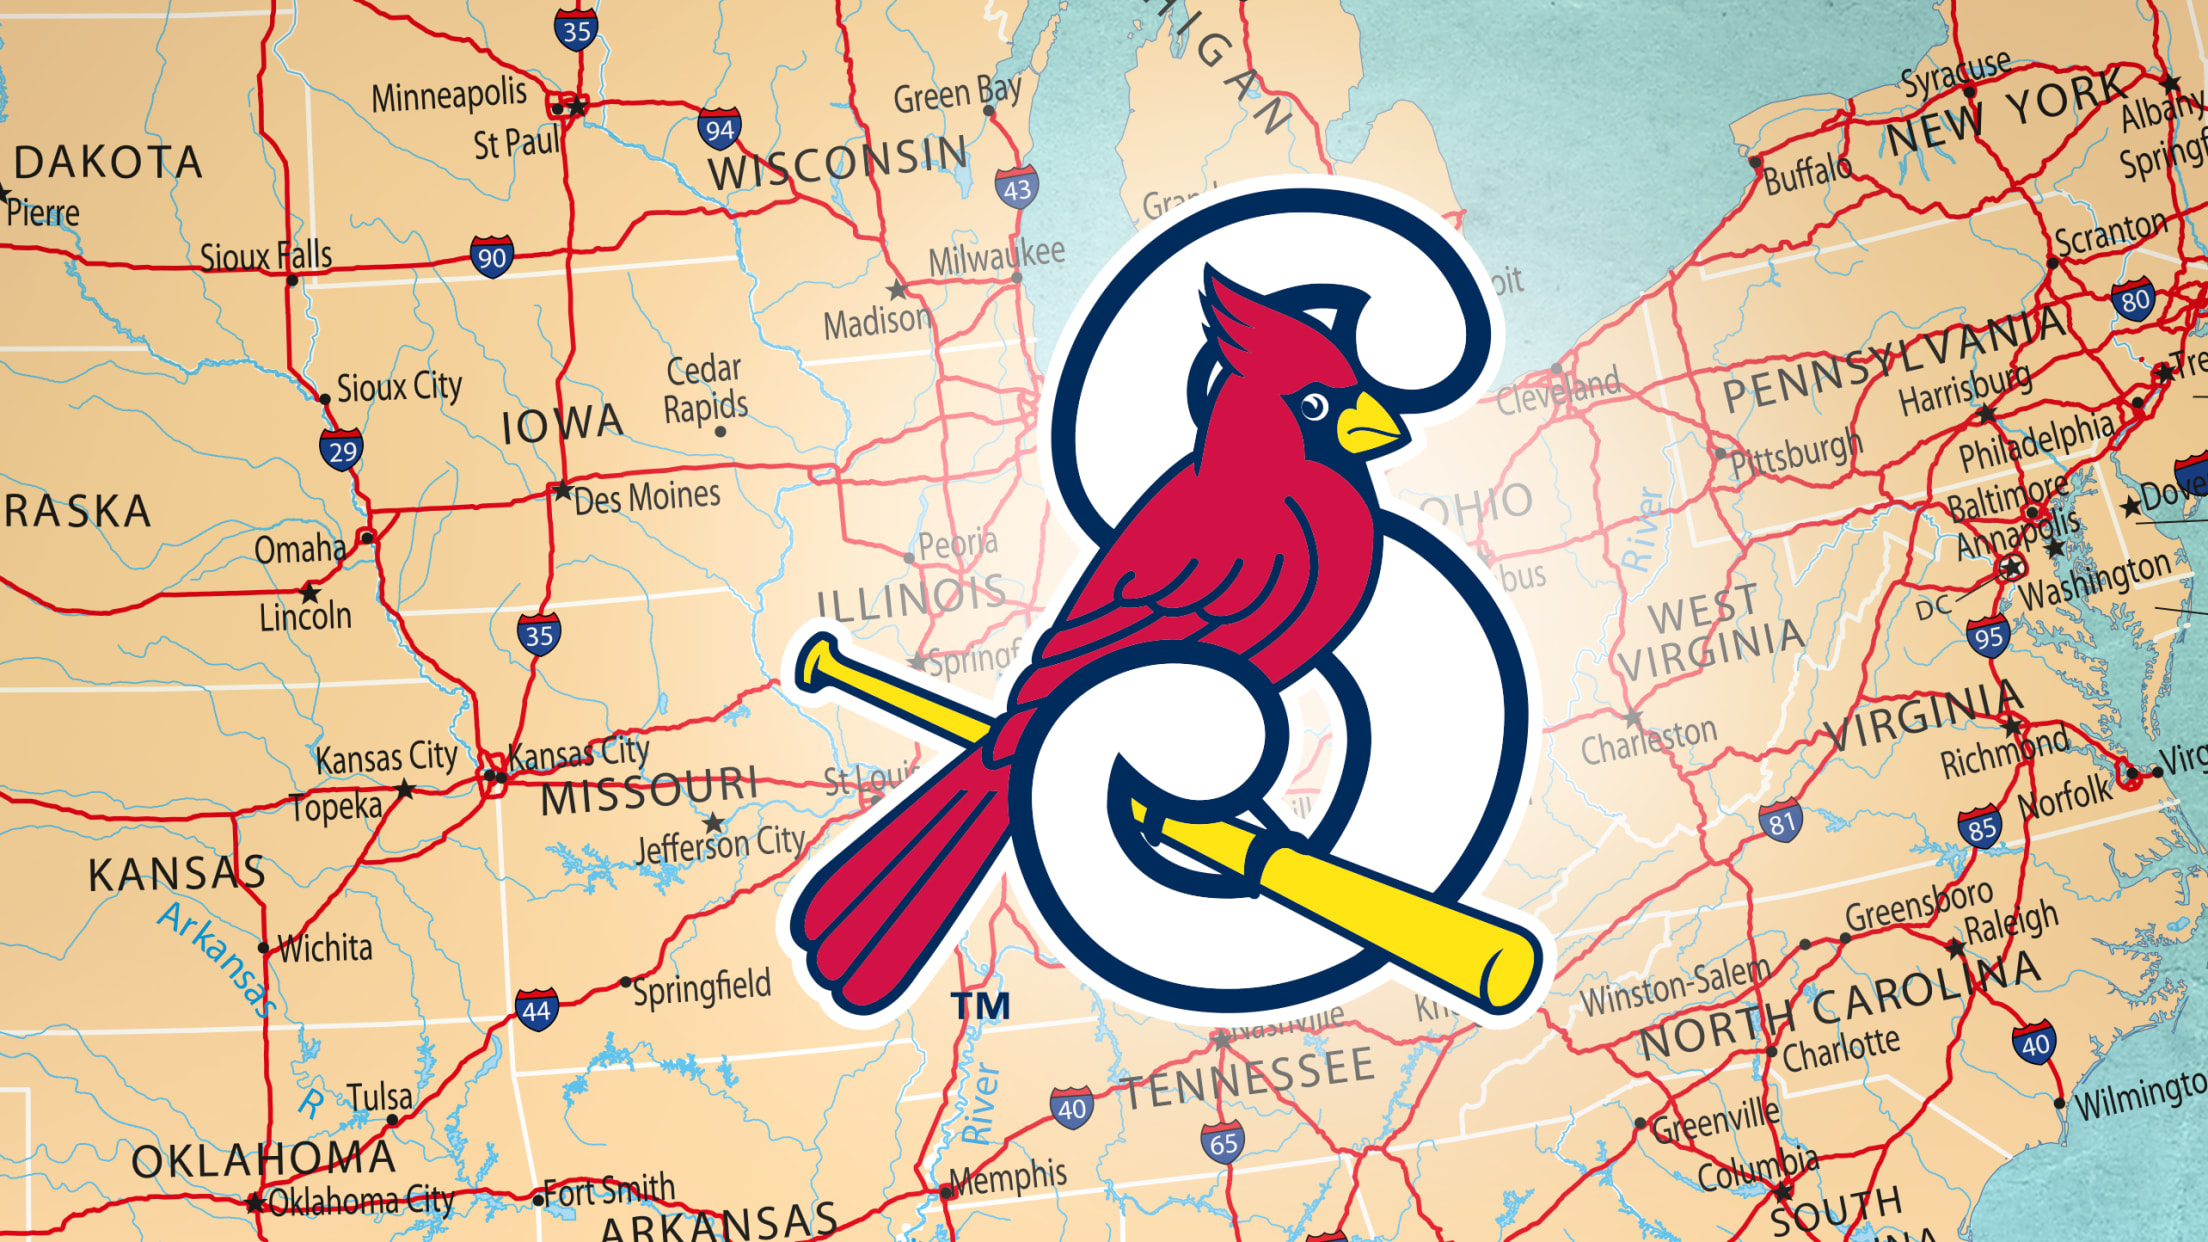 Jack Flaherty (St. Louis Cardinals) Hero Series MLB Bobblehead by